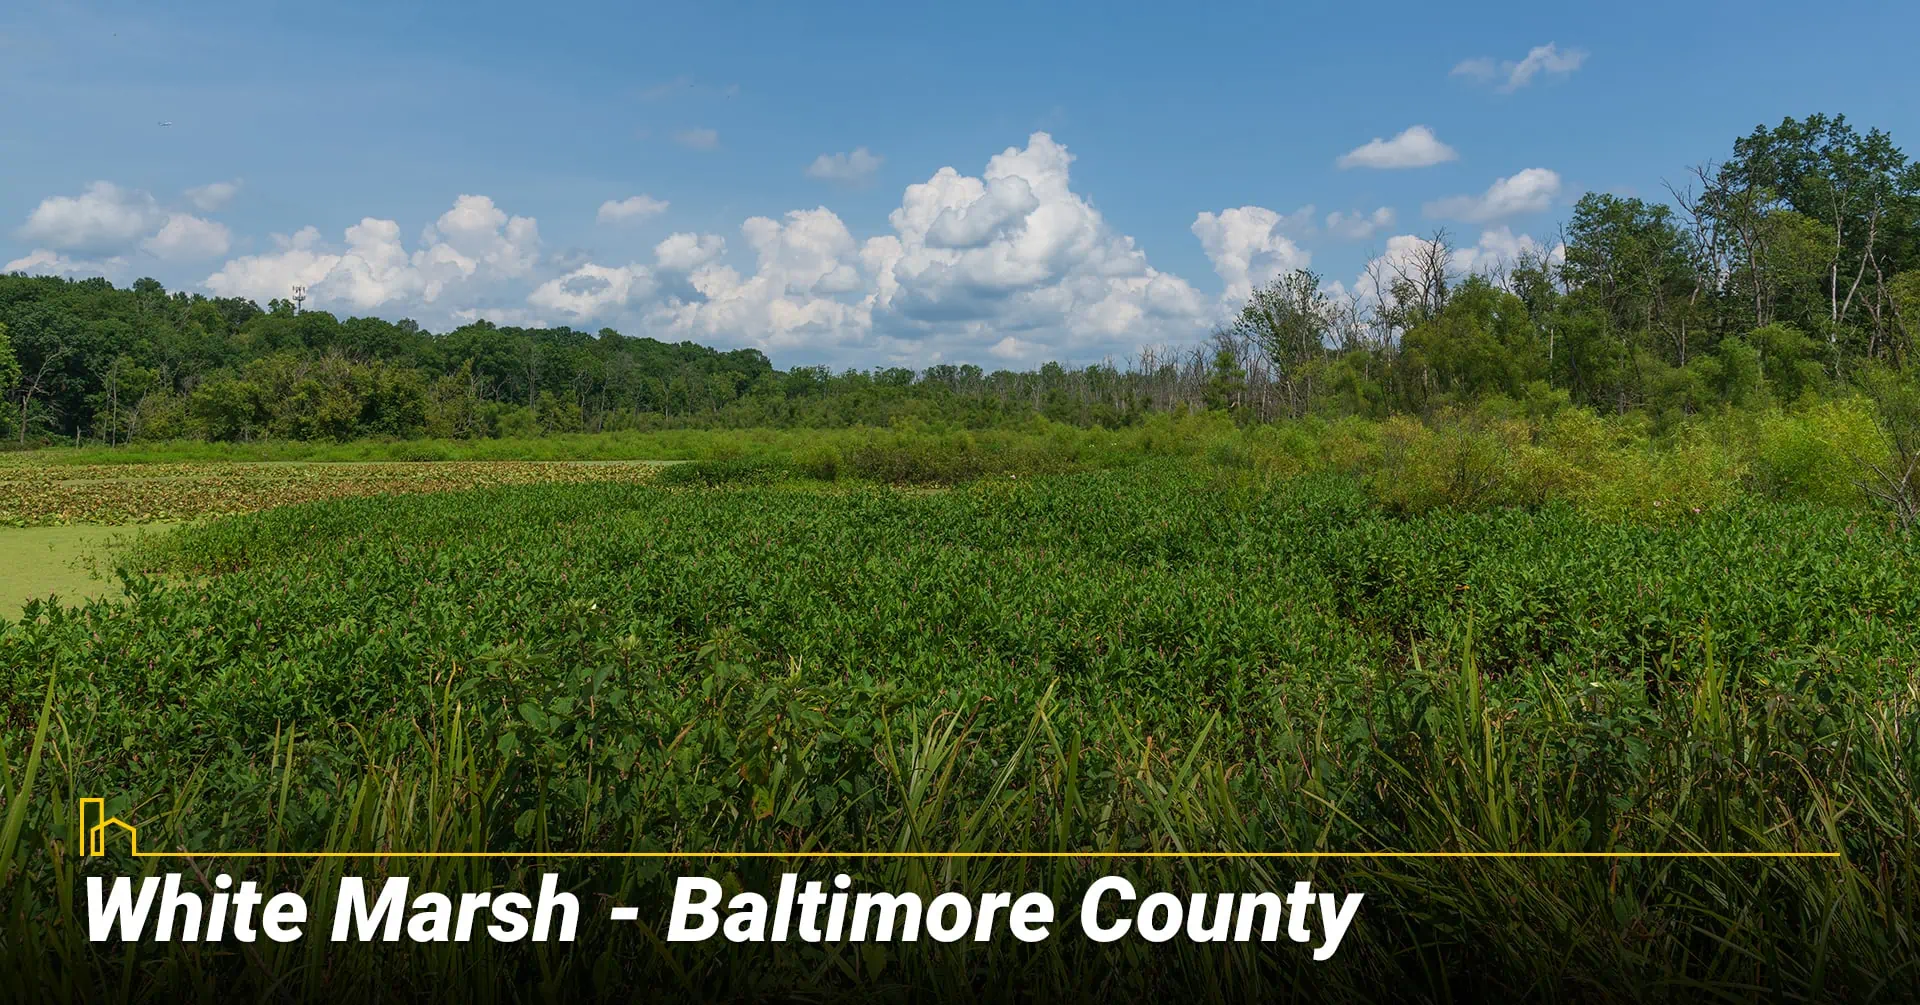 White Marsh - Baltimore County